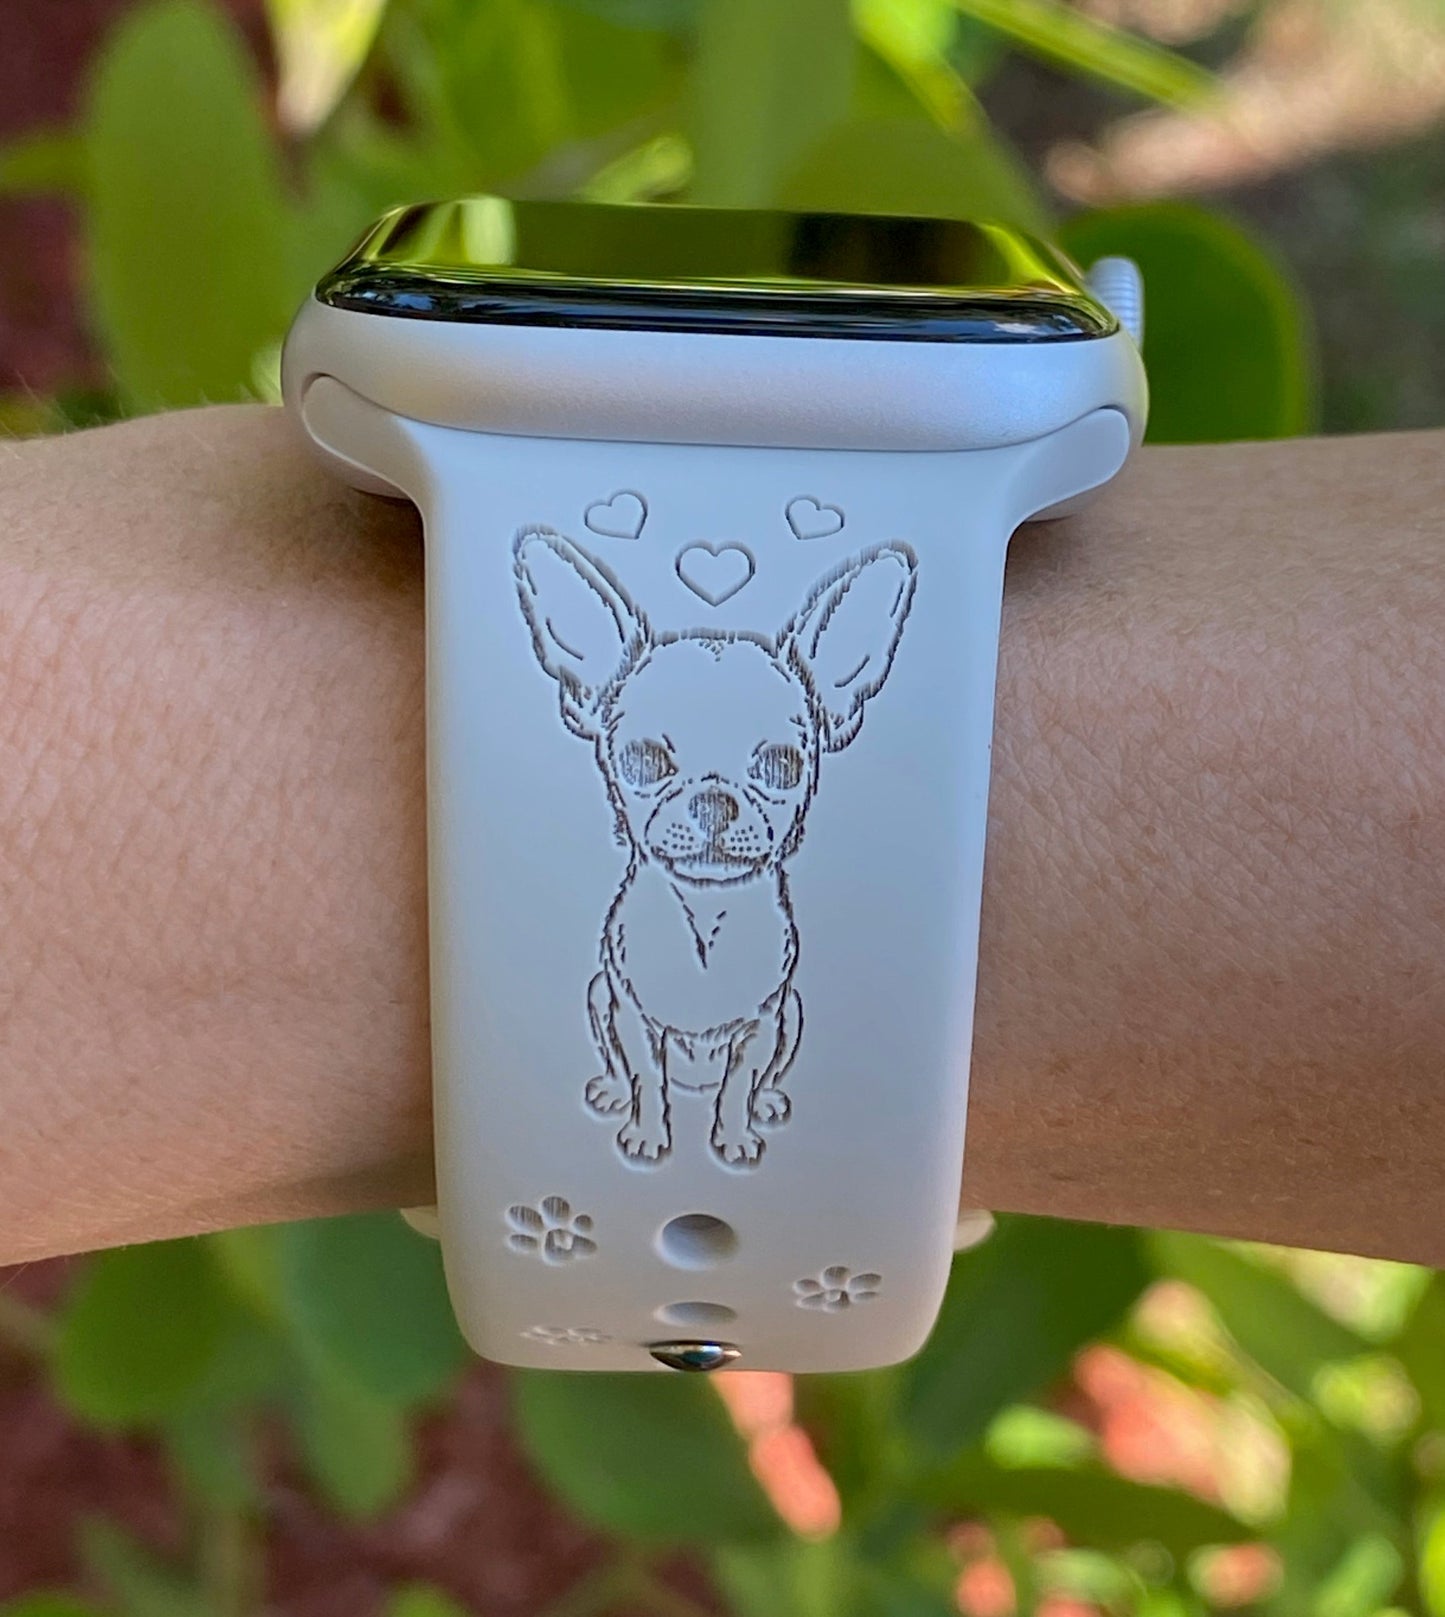 Chihuahua Apple Watch Band